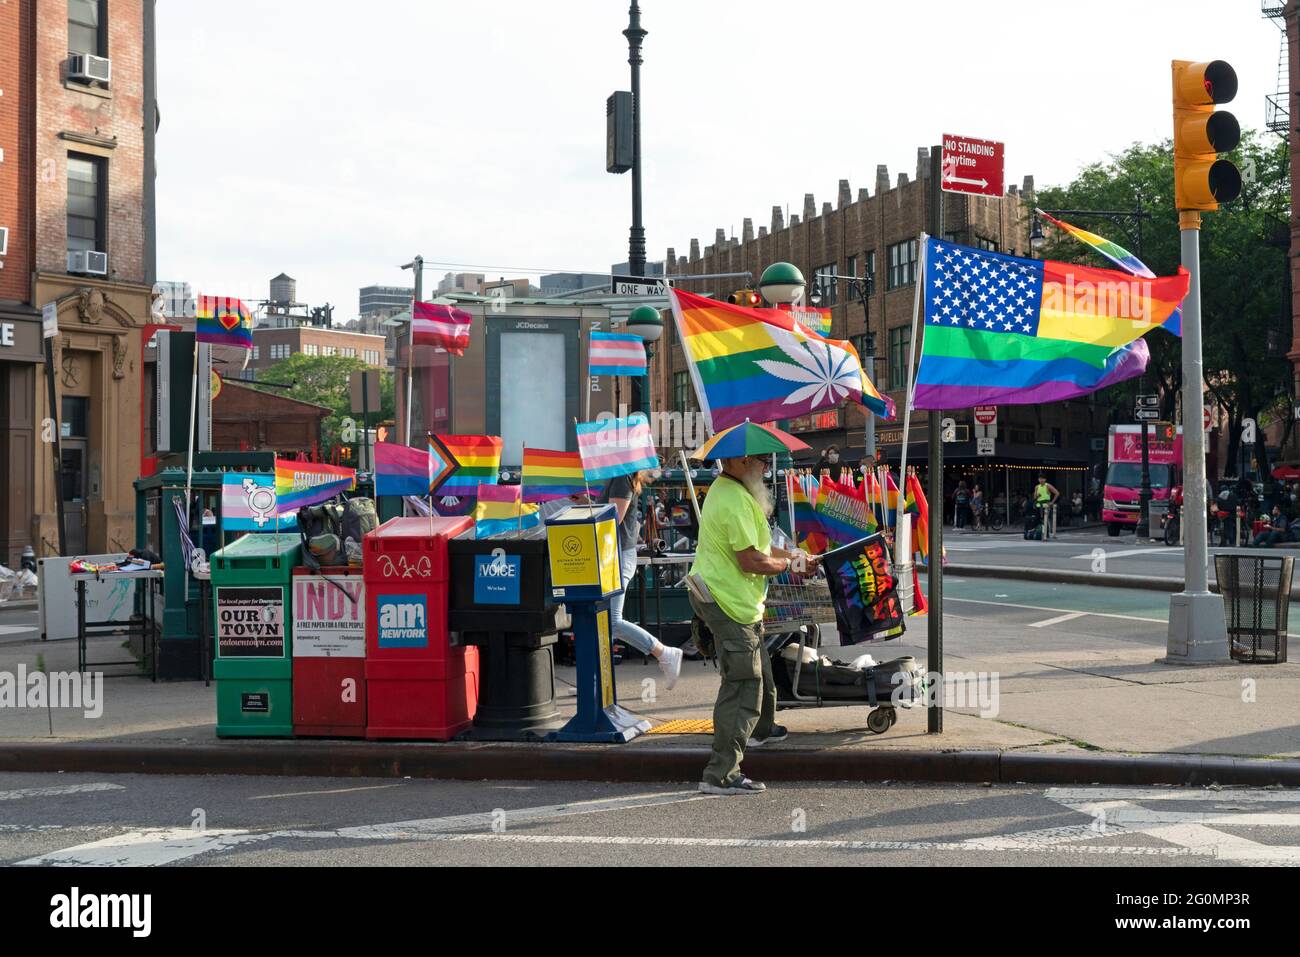 Ein Händler, der seine Gay Pride-Waren an der Ecke von Seventh Ave. Und Grove St., gegenüber dem Stonewall National Monument in Greenwich Village, verkauft. Stockfoto